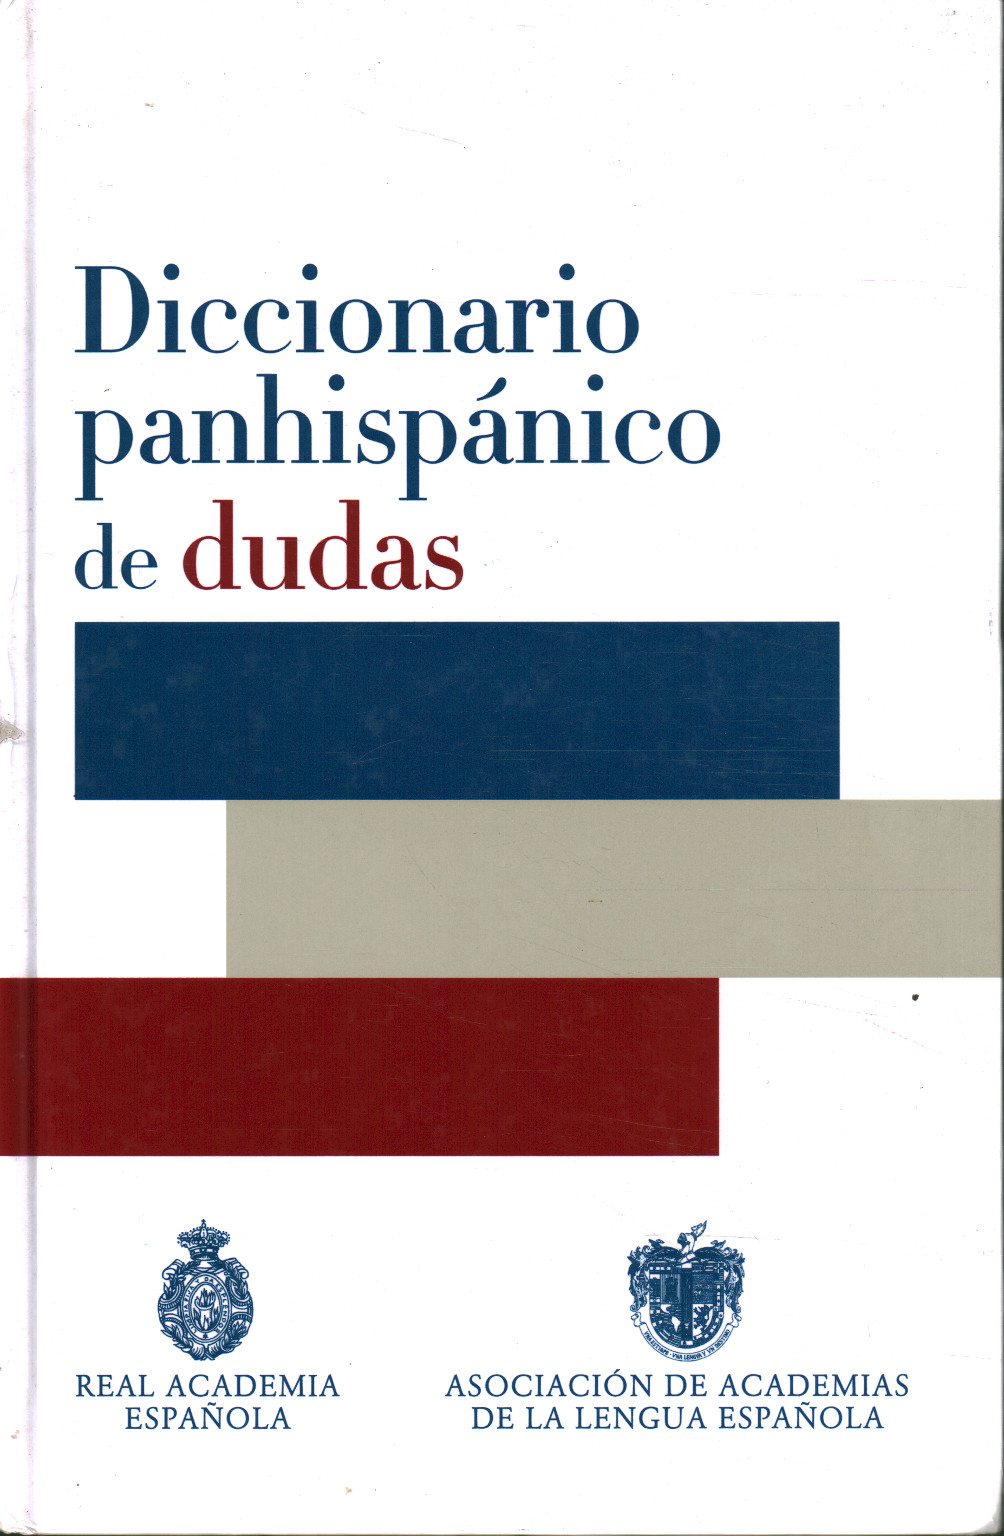 Panhispánico dictatorship of dudas